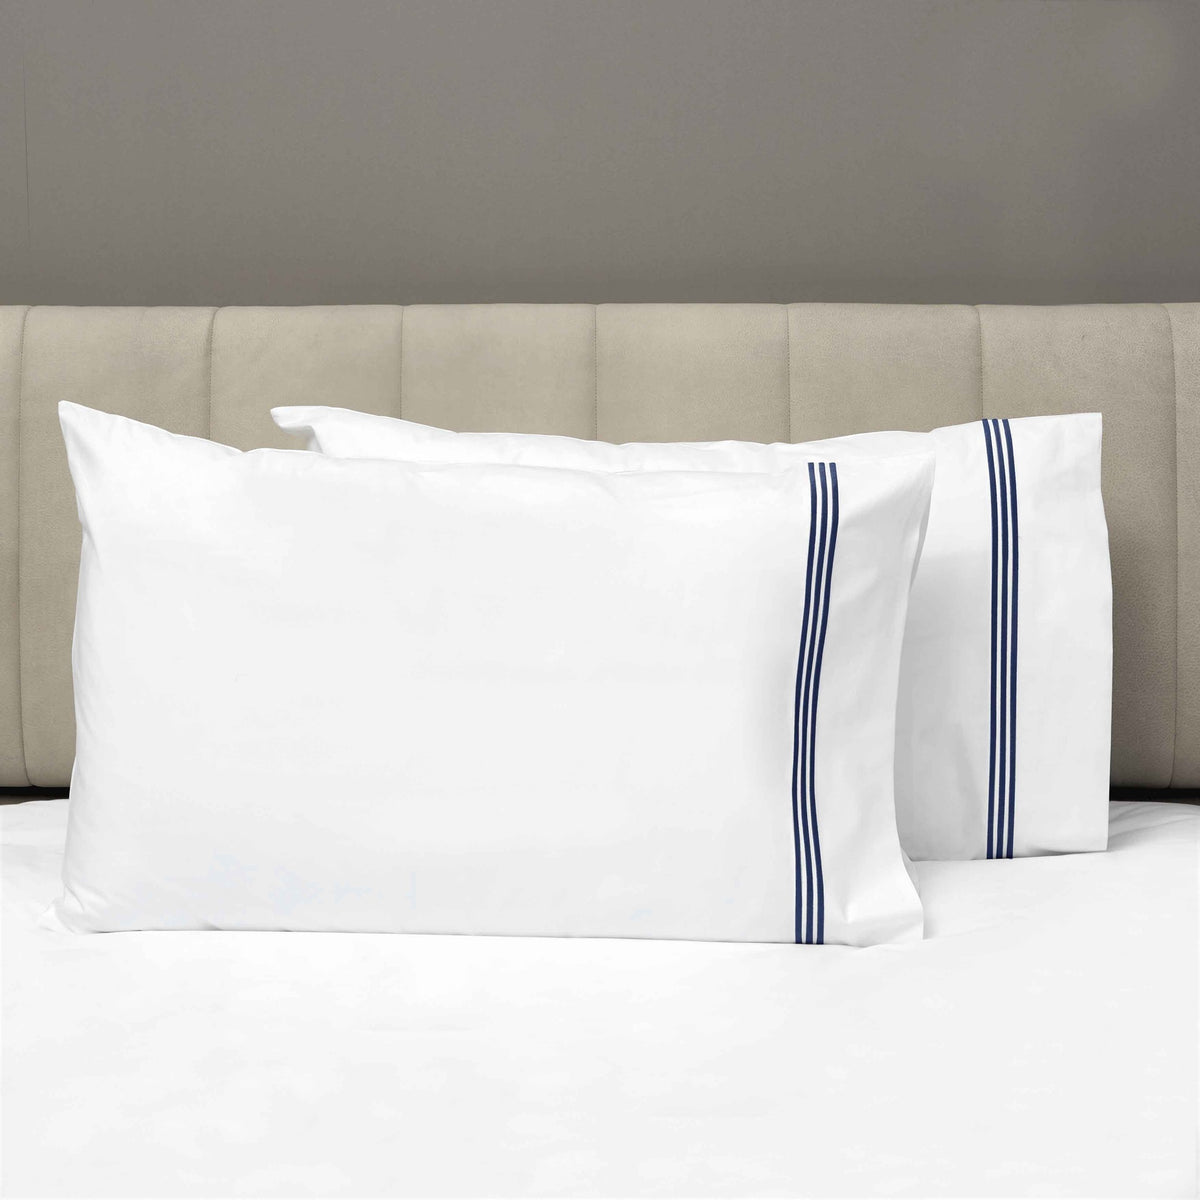 Pair of Pillowcases of Signoria Platinum Percale Bedding in White/Dark Blue Color